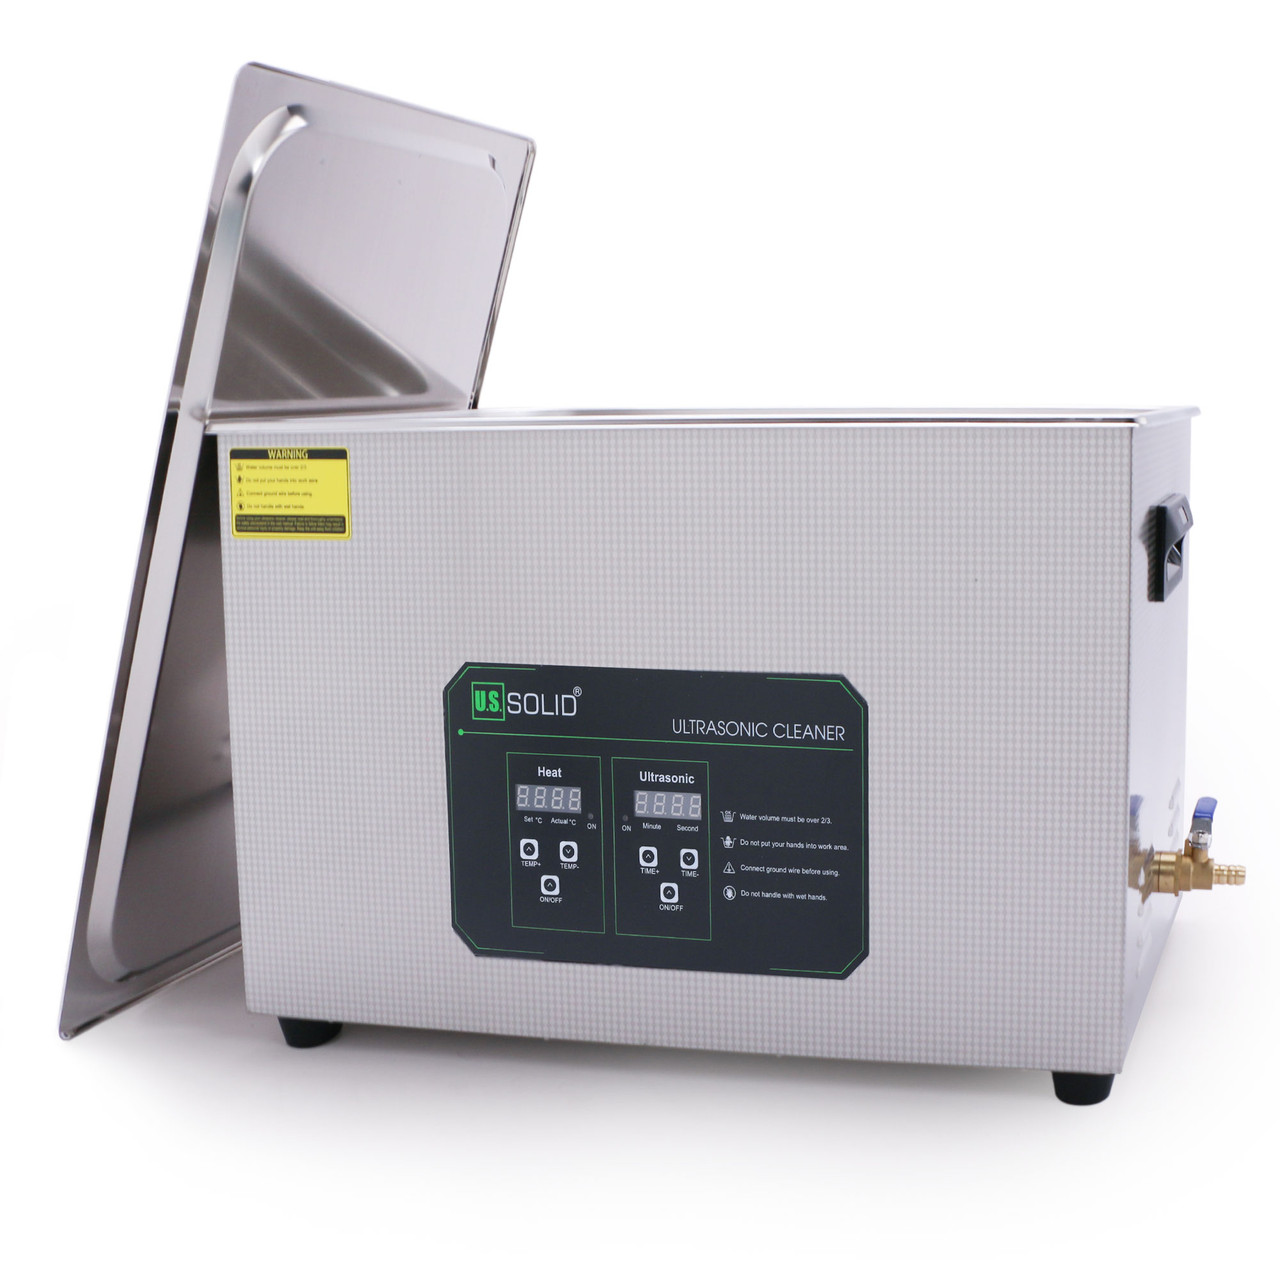 30L U.S. Solid Digitaler Ultrasonic Cleaner - 5.3 gal 40 KHz Edelstahl-Ultraschallreinigungsmaschine für Industrie und Schmuck - Max. Heizungstemp. 176℉ - FCC, CE, RoHS, UL zertifiziert